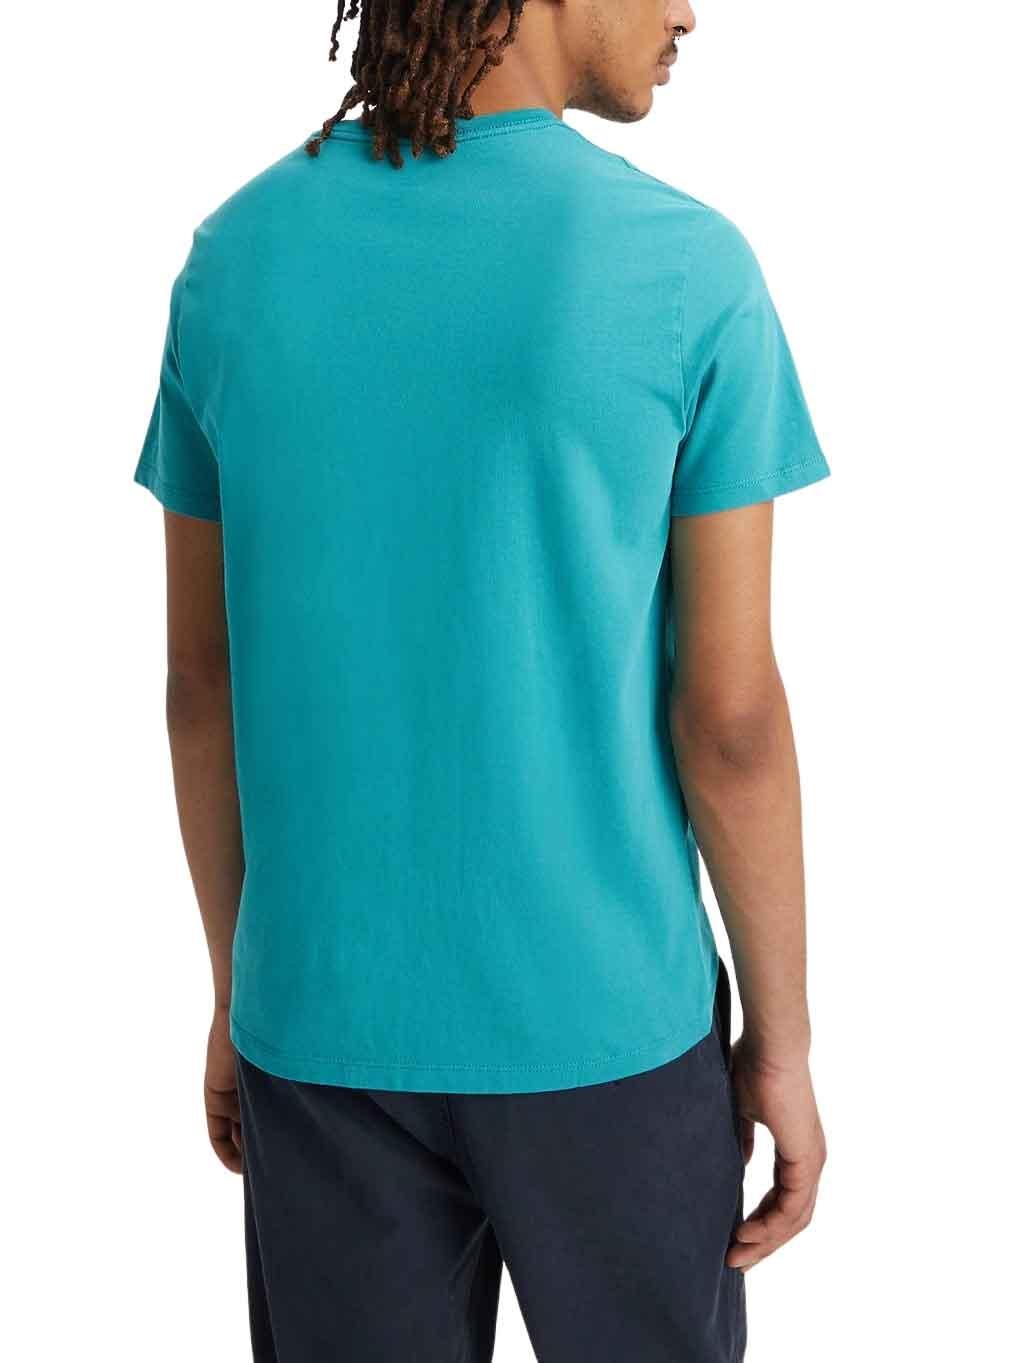 T-Shirt Levis Original Turquesa per Uomo